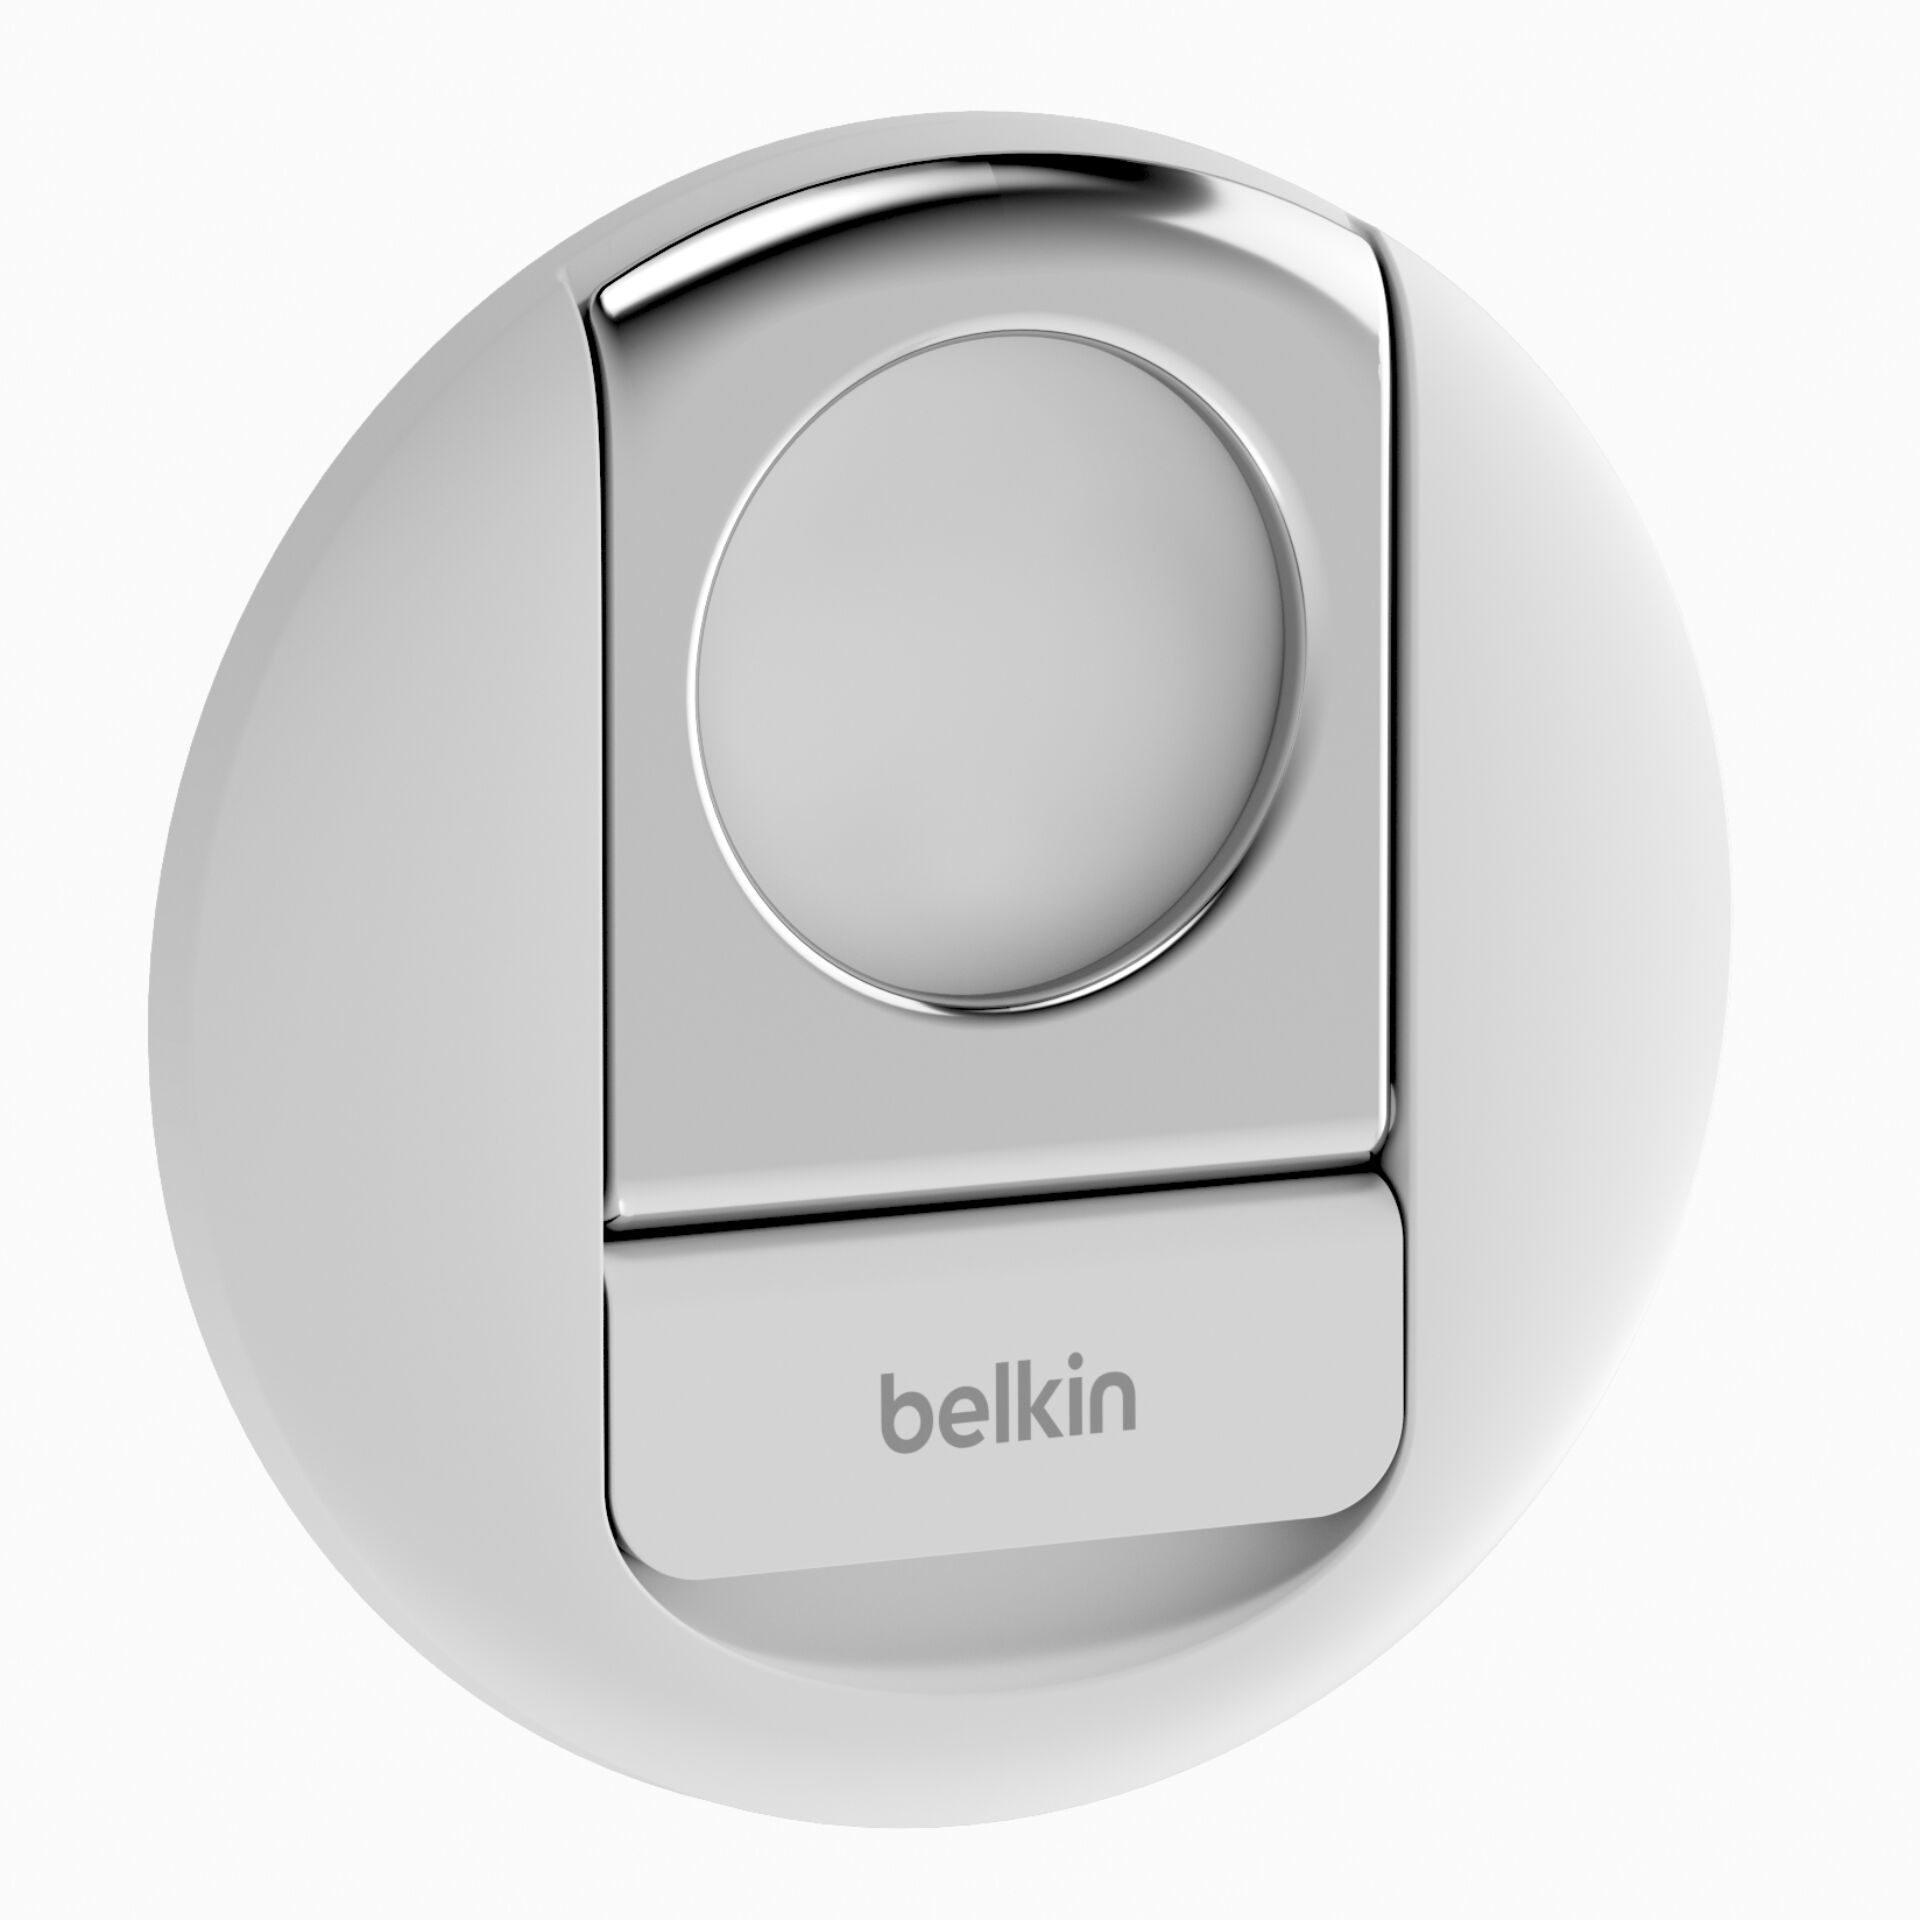 Belkin MMA006btWH Aktive Halterung Handy/Smartphone Weiß